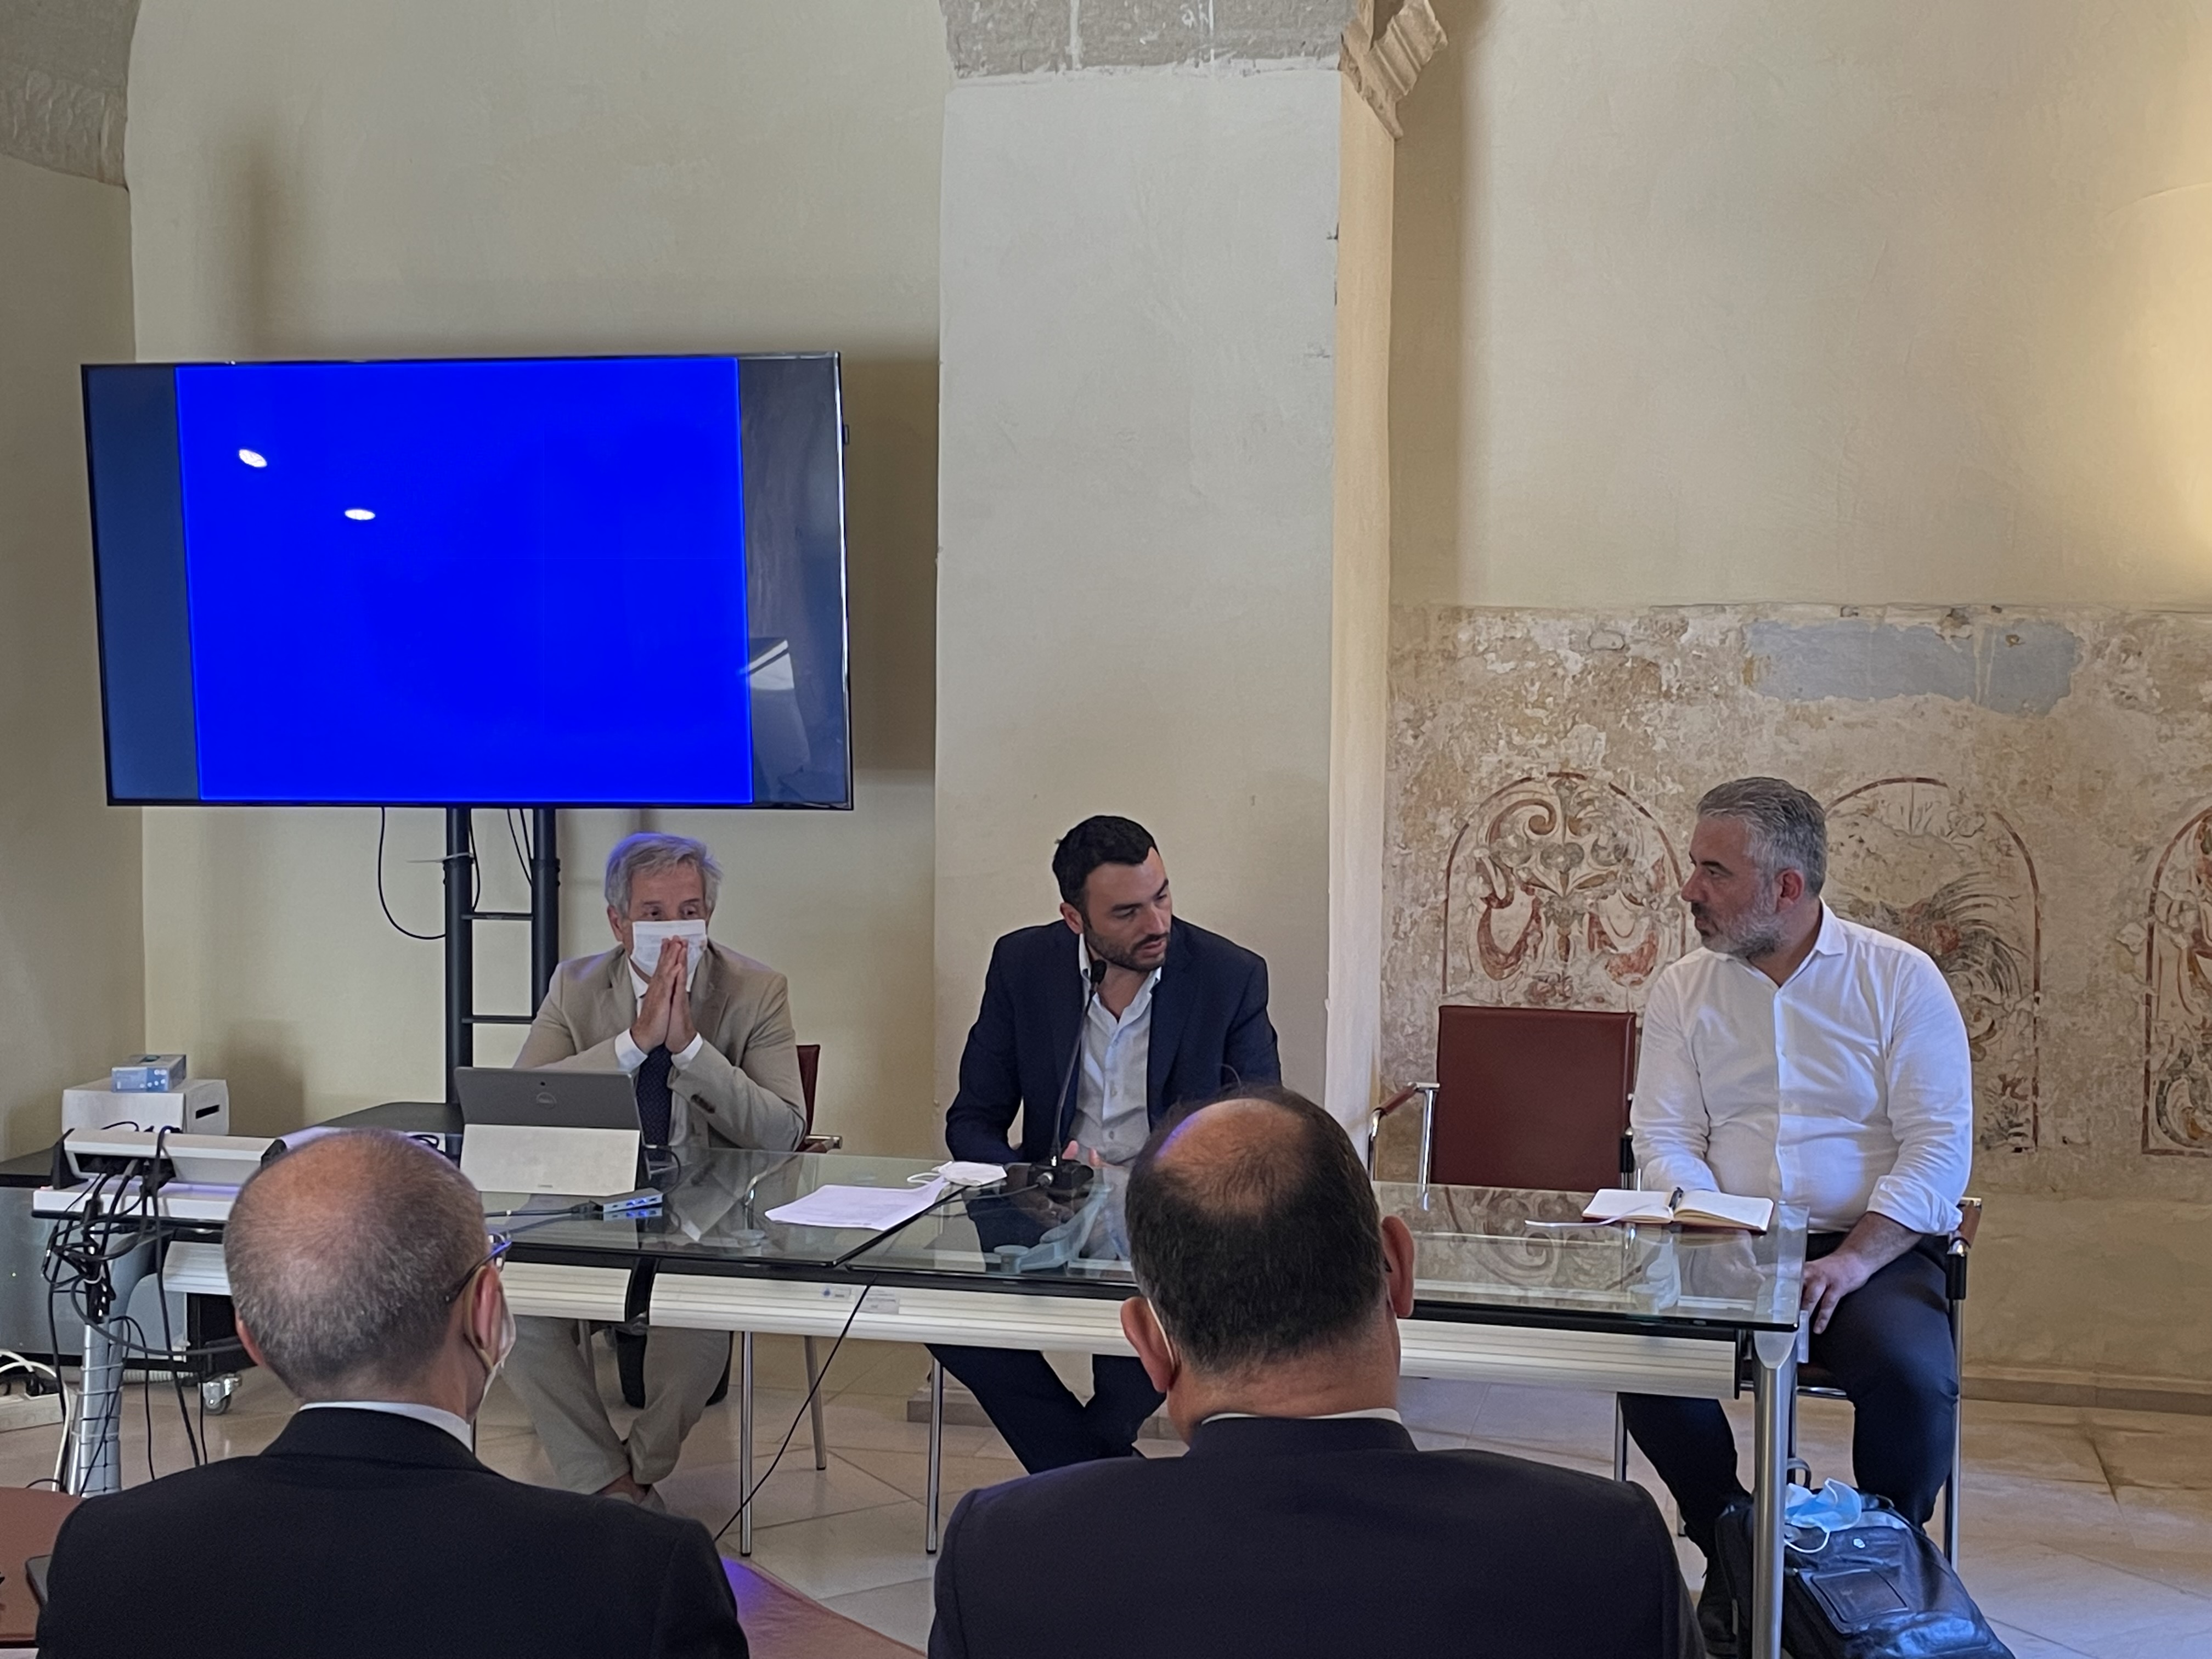 Gallery Incontri bilaterali Puglia - Albania: la cultura dell’innovazione per la crescita dei territori transfrontalieri - Slide 9 of 11